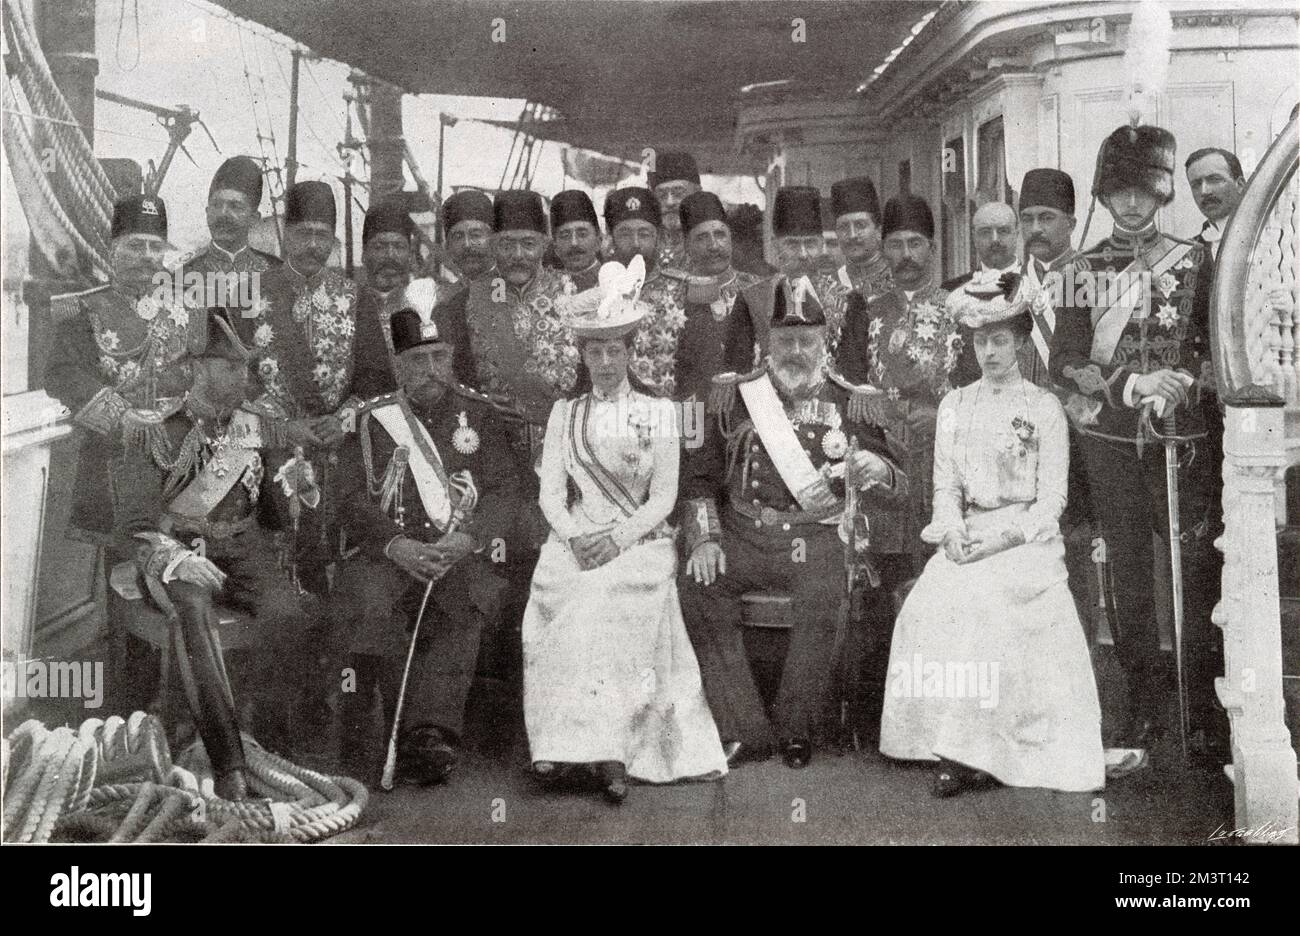 Der Besuch des Schahs von Persien in Großbritannien - Treffen der Königsfamilie in Portsmouth am 20. August 1902. Gruppenfoto an Bord der Royal Yacht Victoria & Albert. Stockfoto